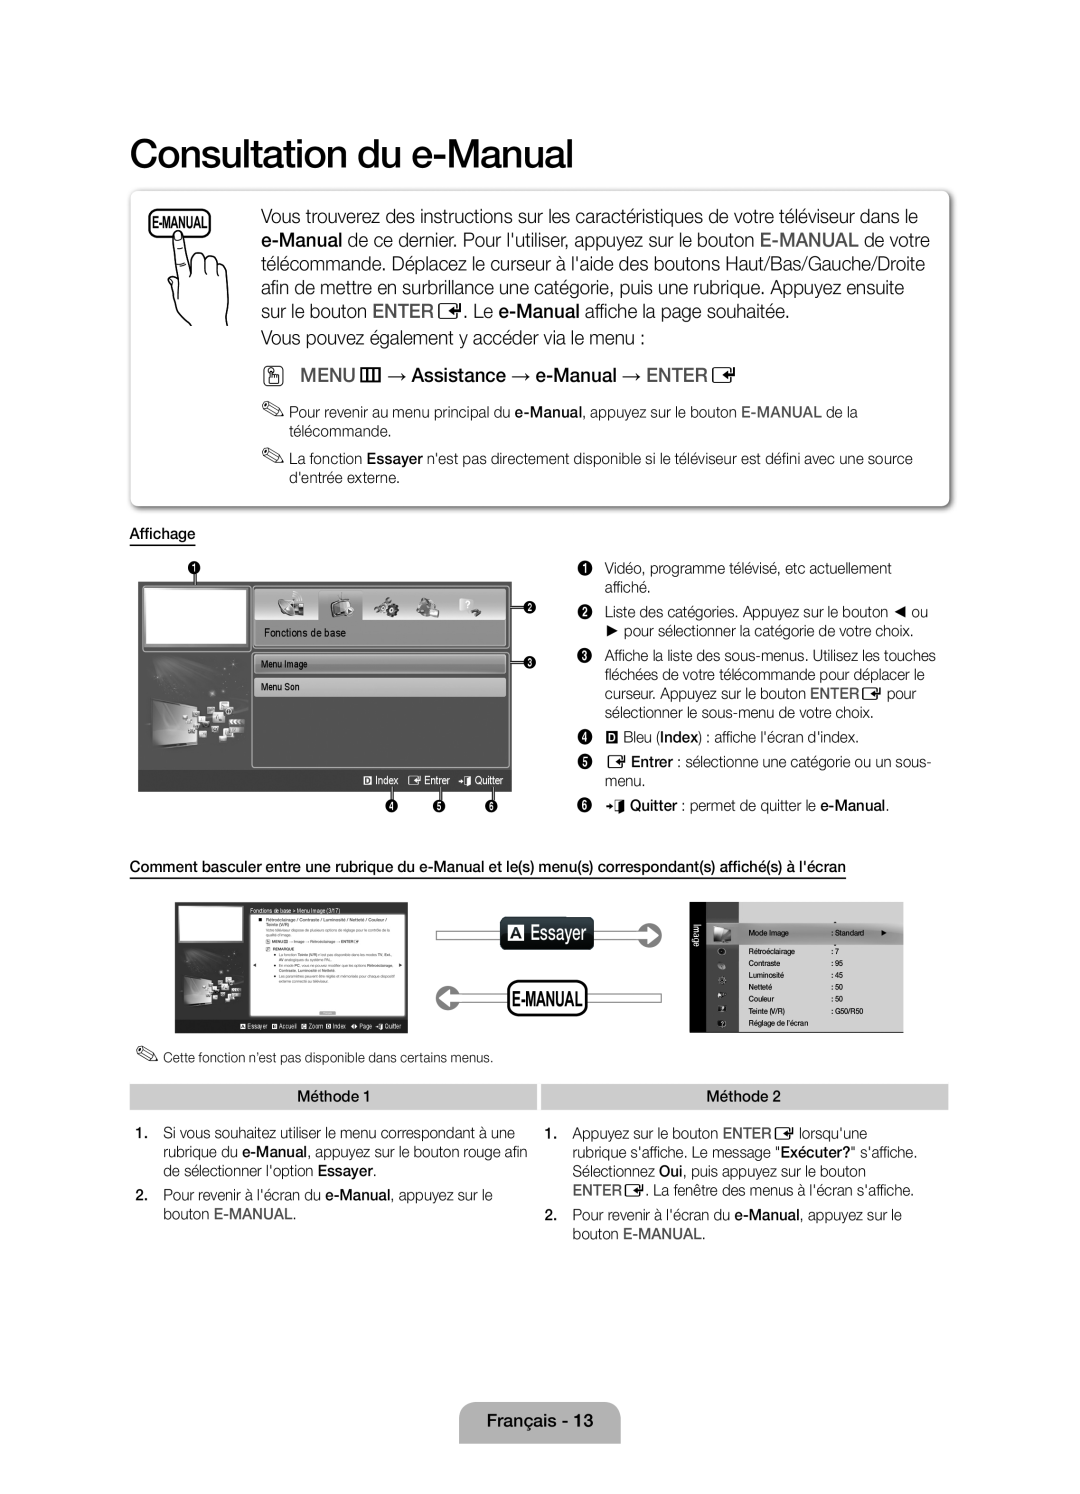 Samsung UE32D5000PWXZF Consultation du e-Manual, aEssayer, sur le bouton ENTER E. Le e-Manual affiche la page souhaitée 